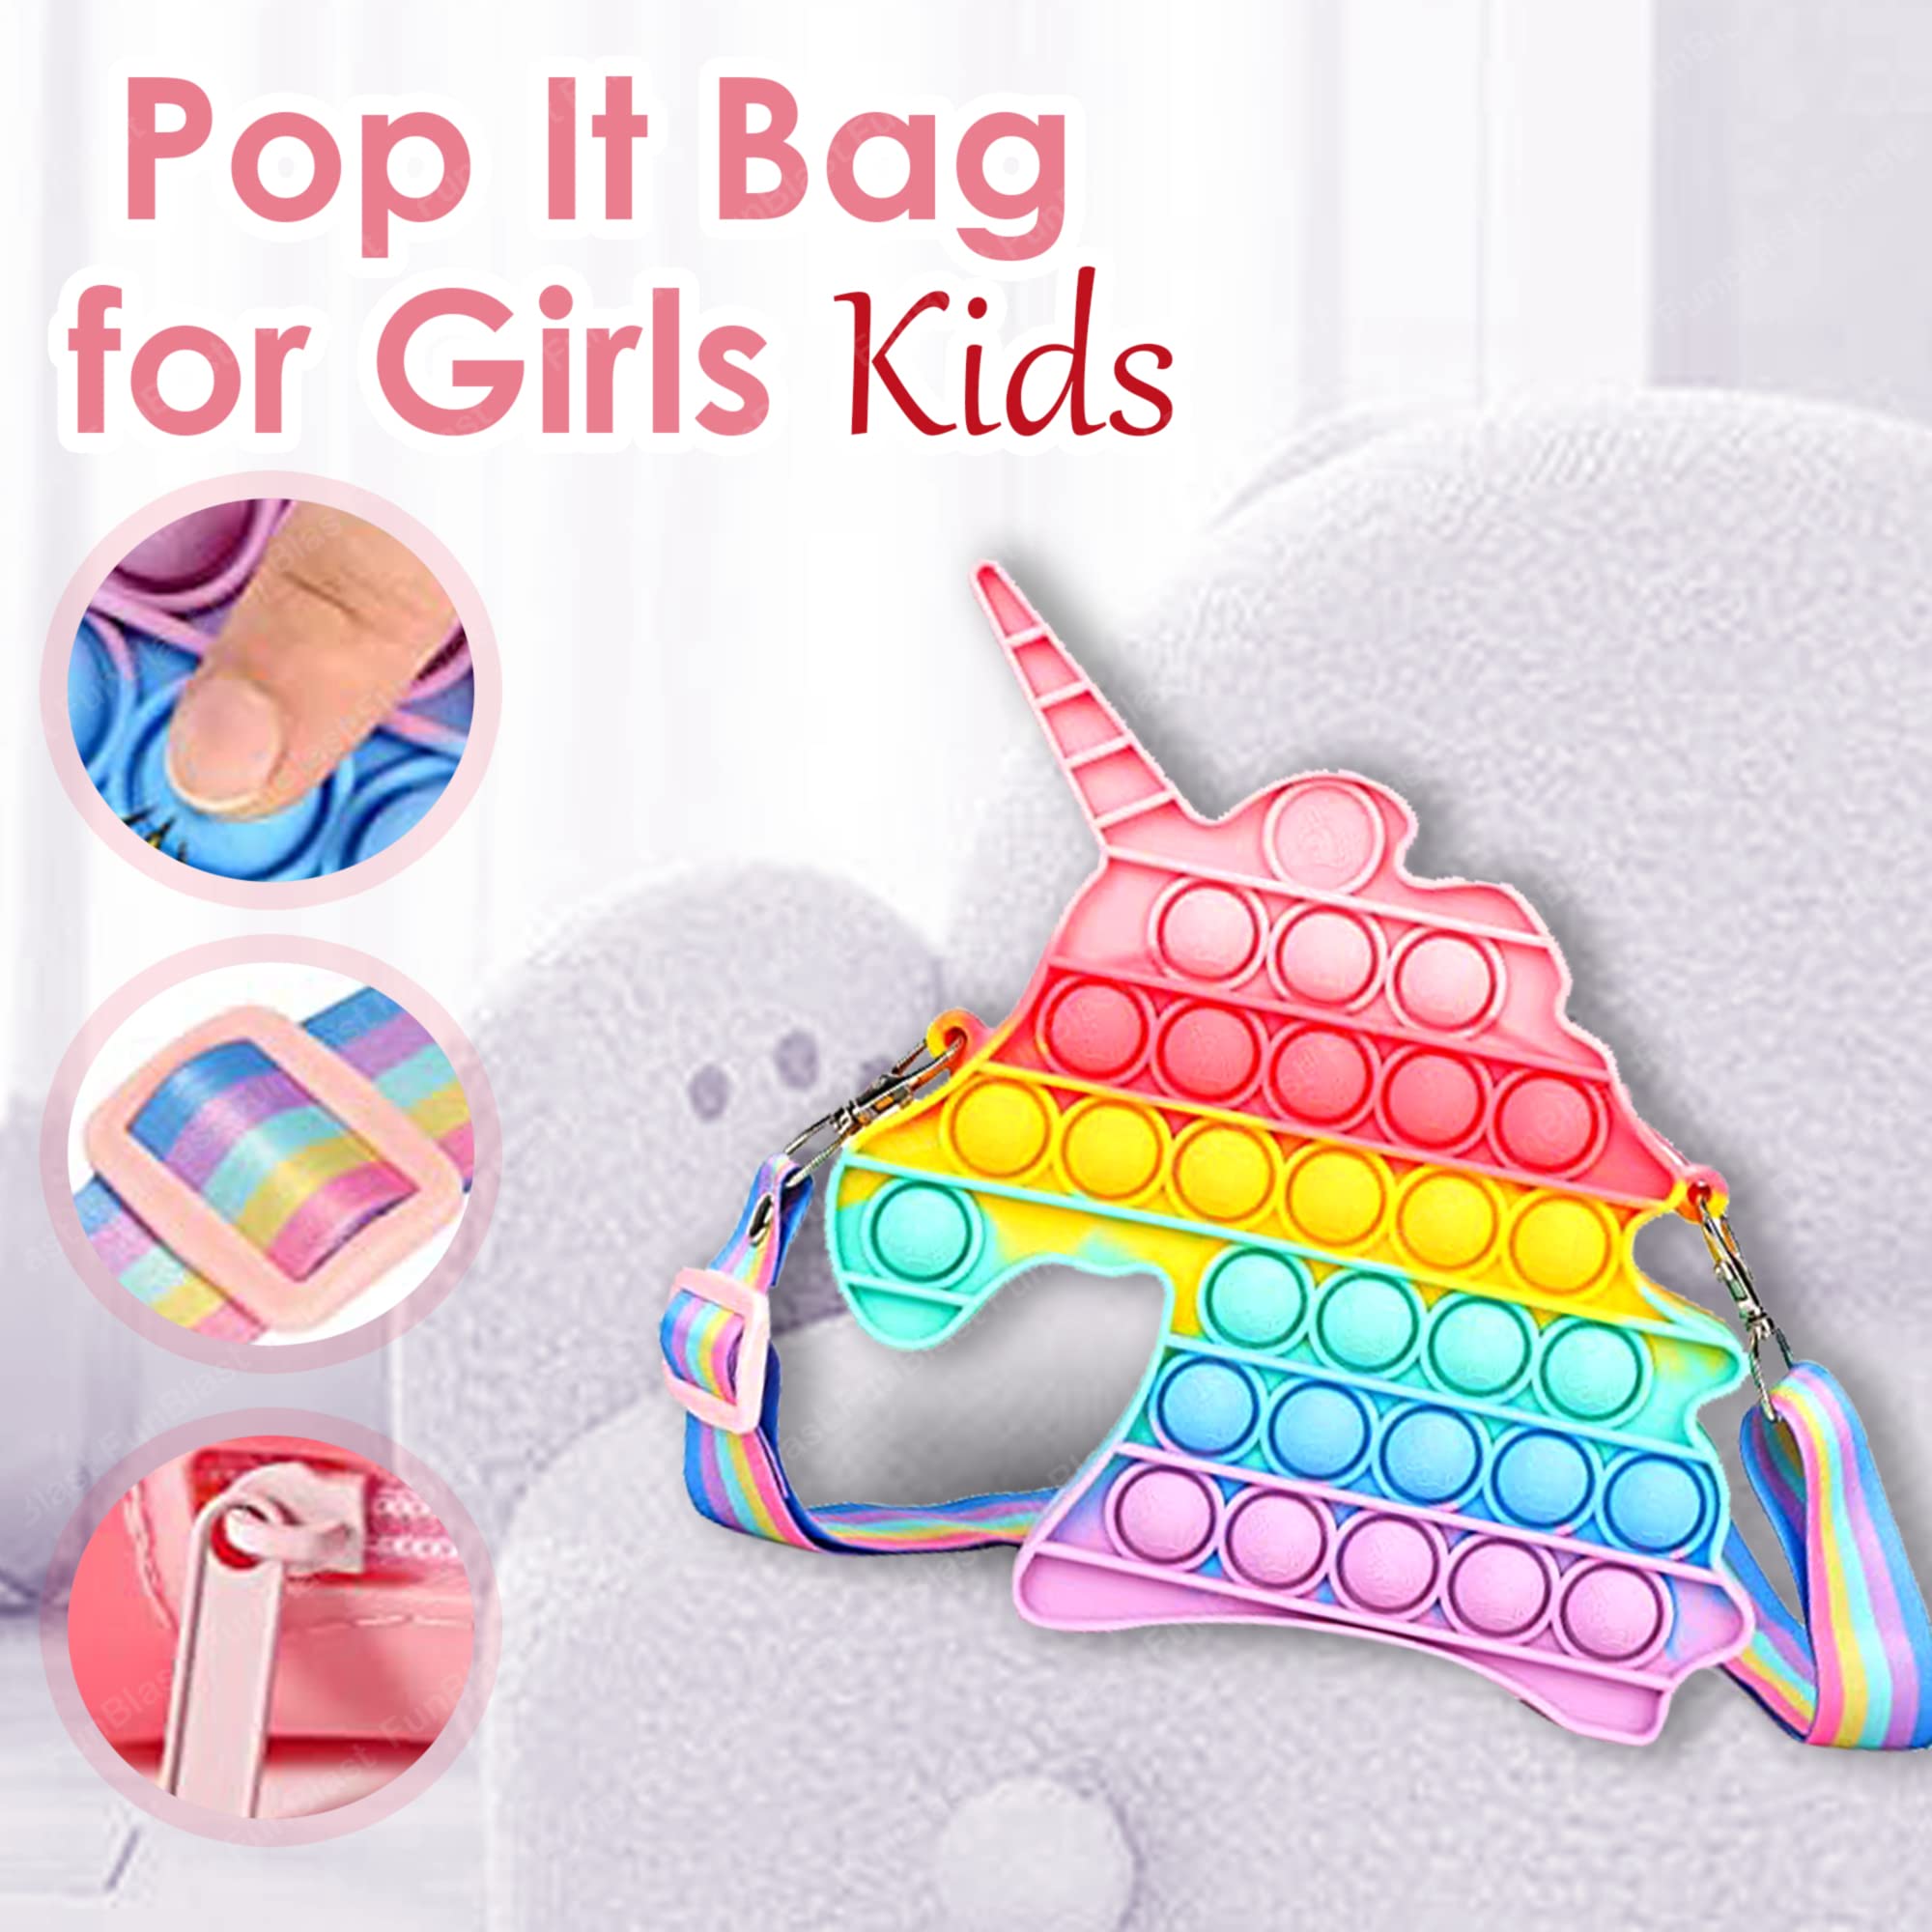 Sling Bag for Girls Crossbody Bag for Kids Sling Bag with Keychain for Girls, Sling Bag for Girls Coin Purse